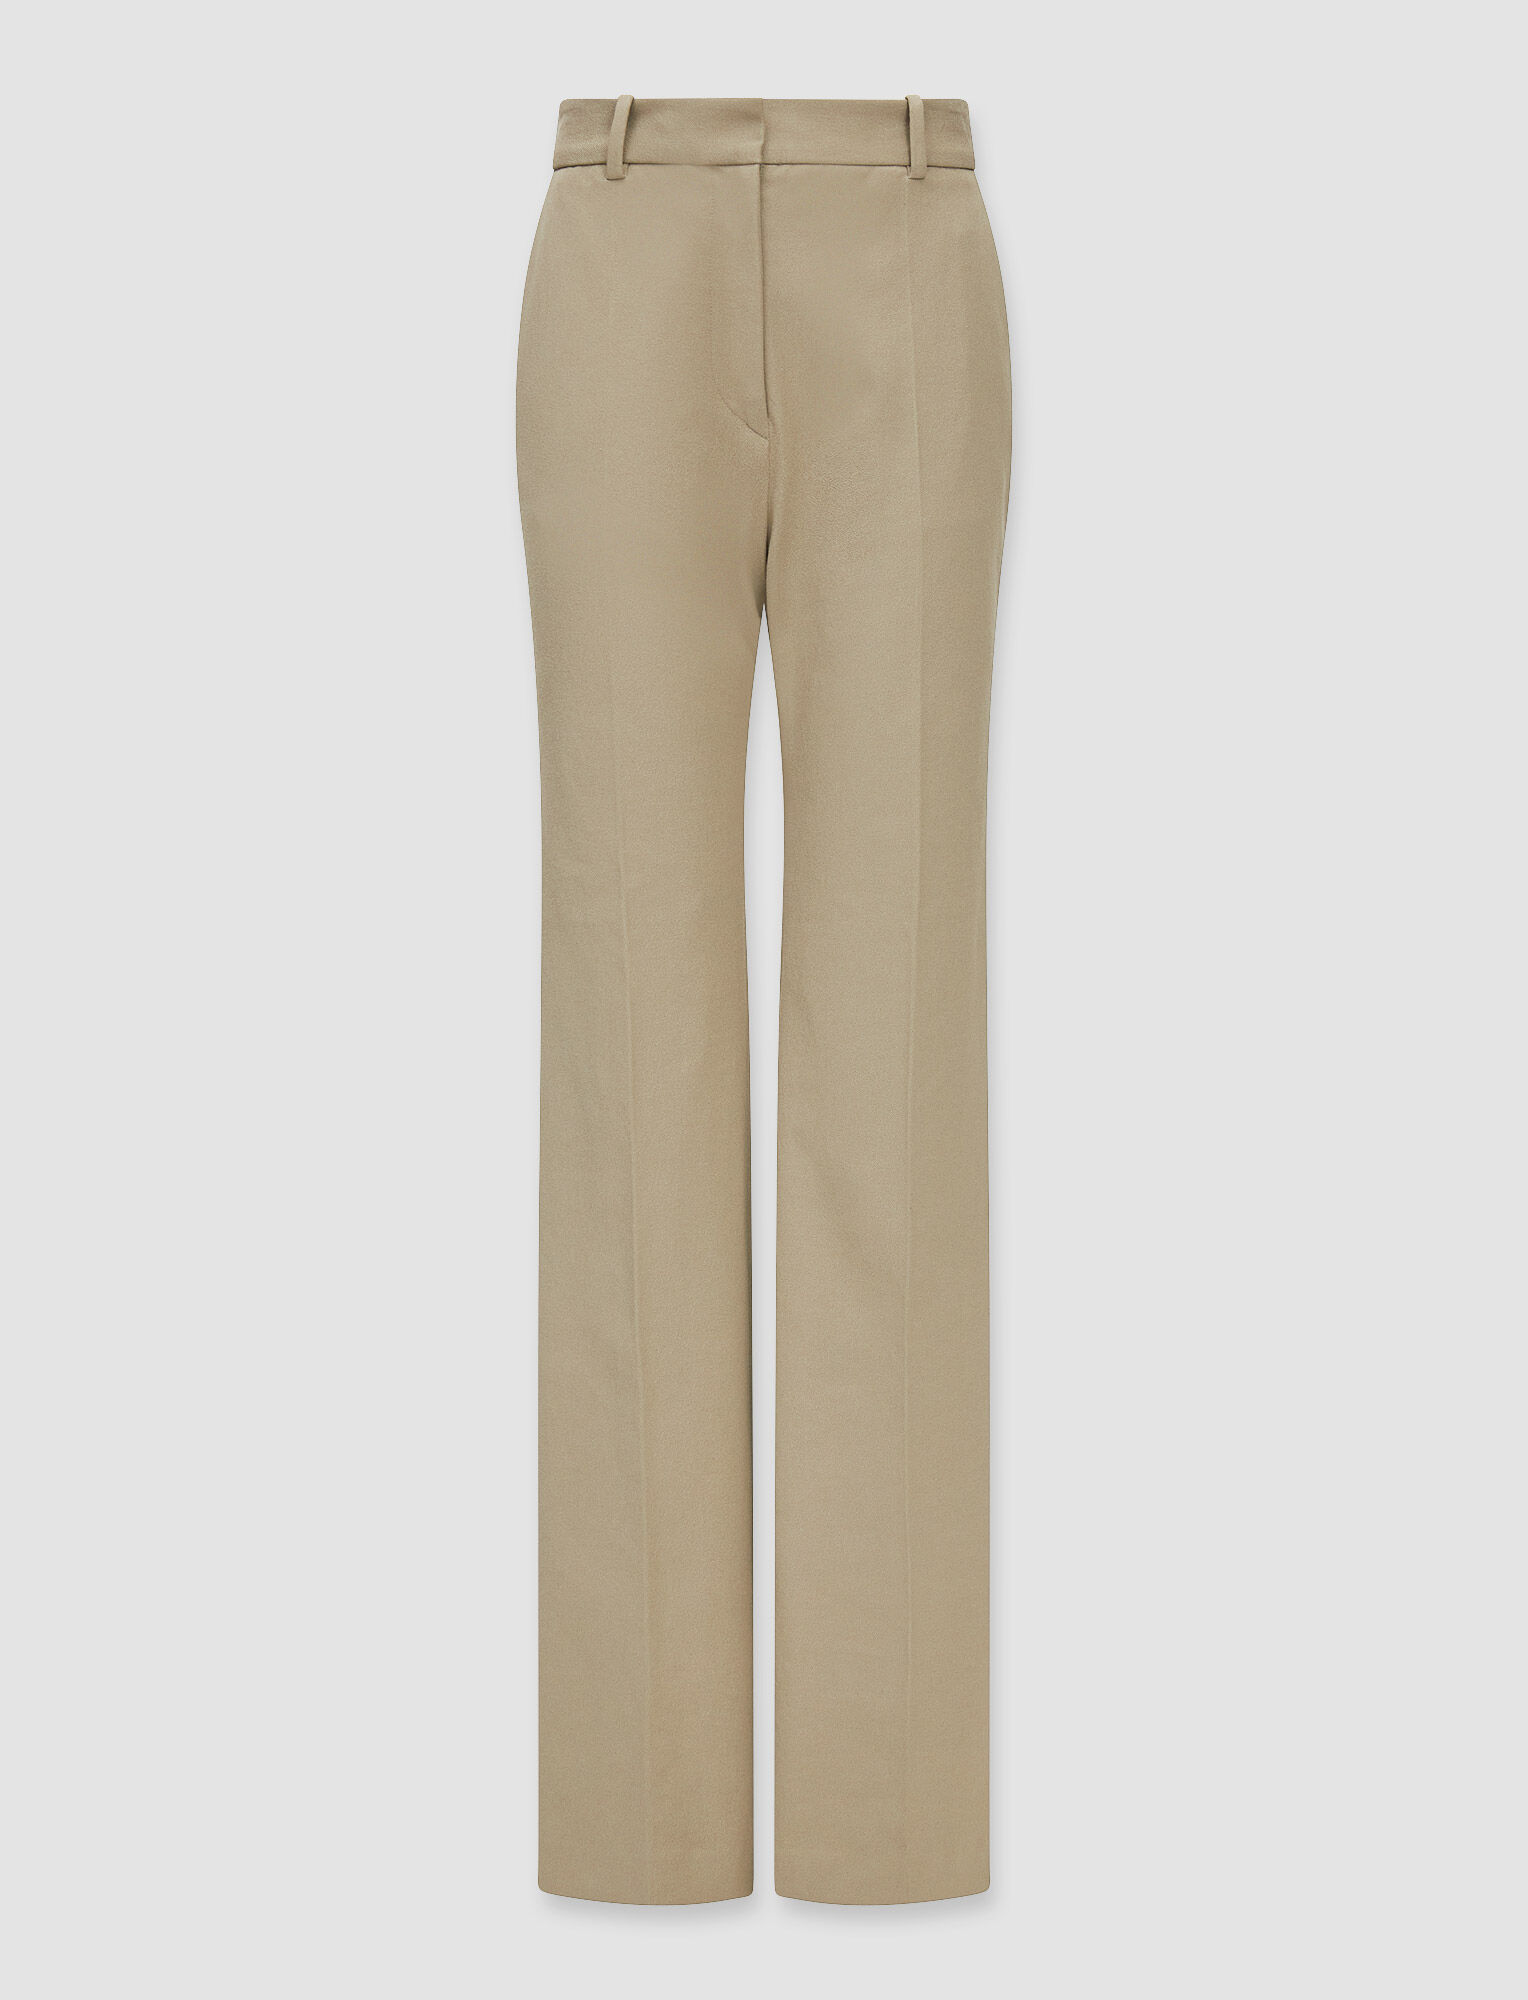 Joseph, Gabardine Stretch Tafira Trousers – Shorter Length, in Pewter